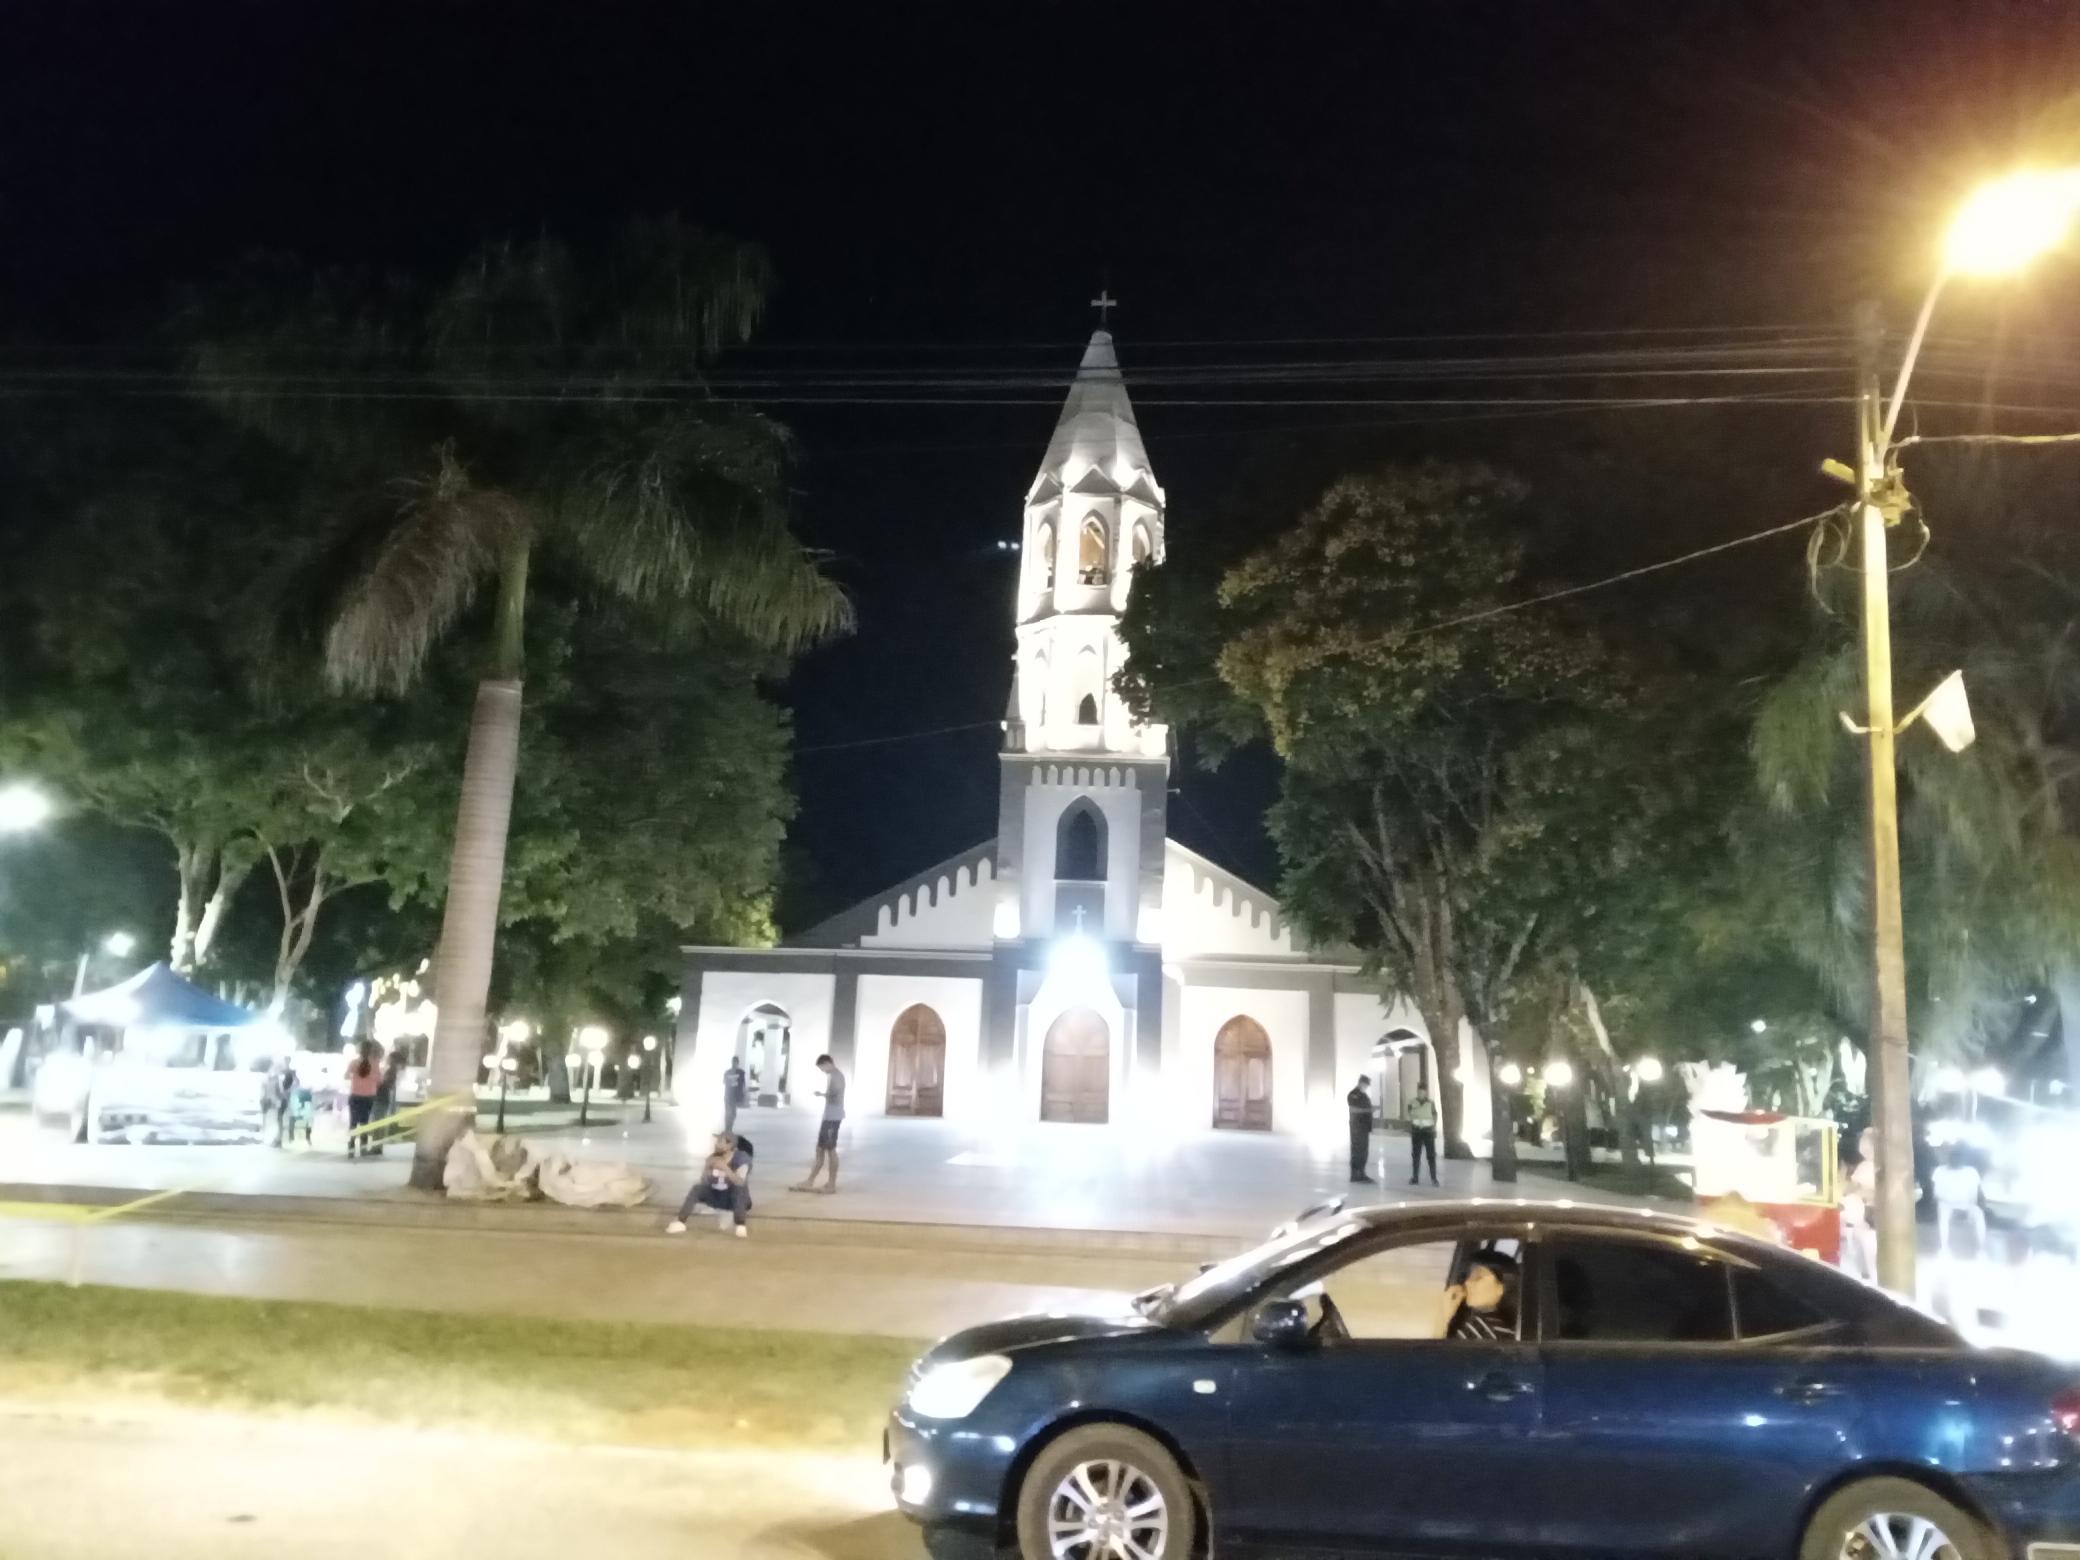 Kirche bei Nacht